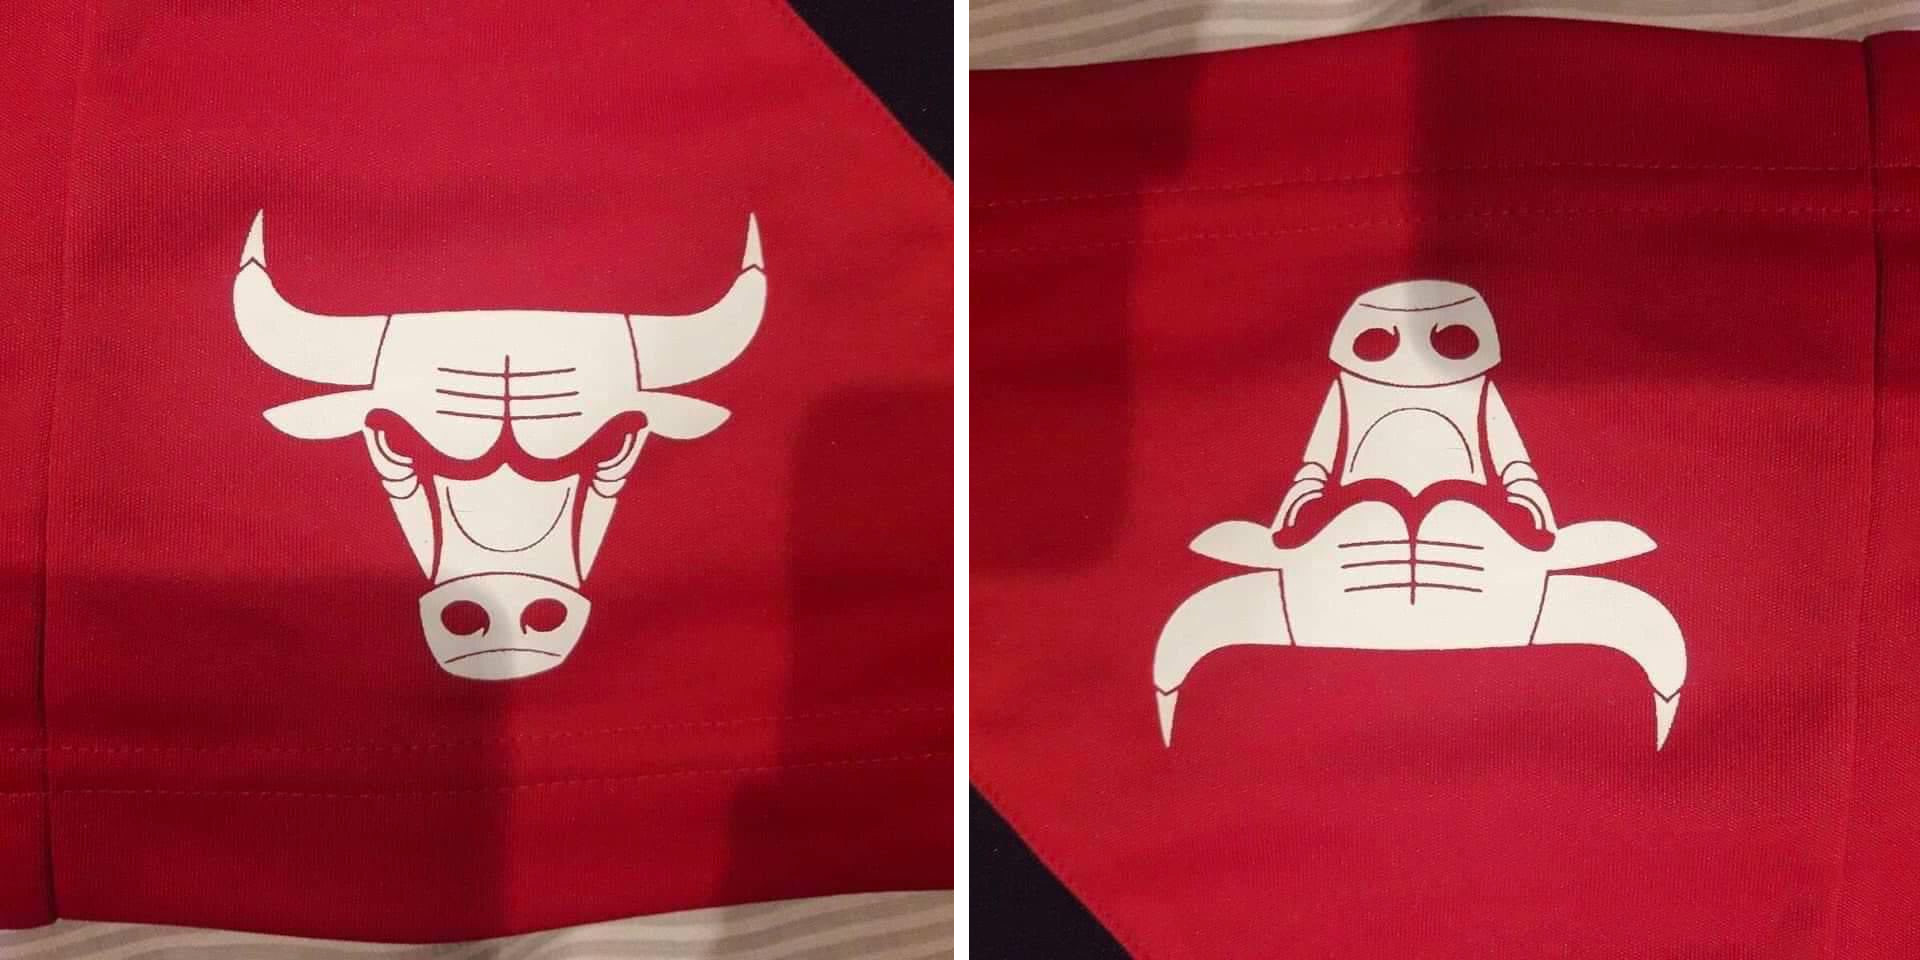 Chicago Bulls Logo Upside Down. 